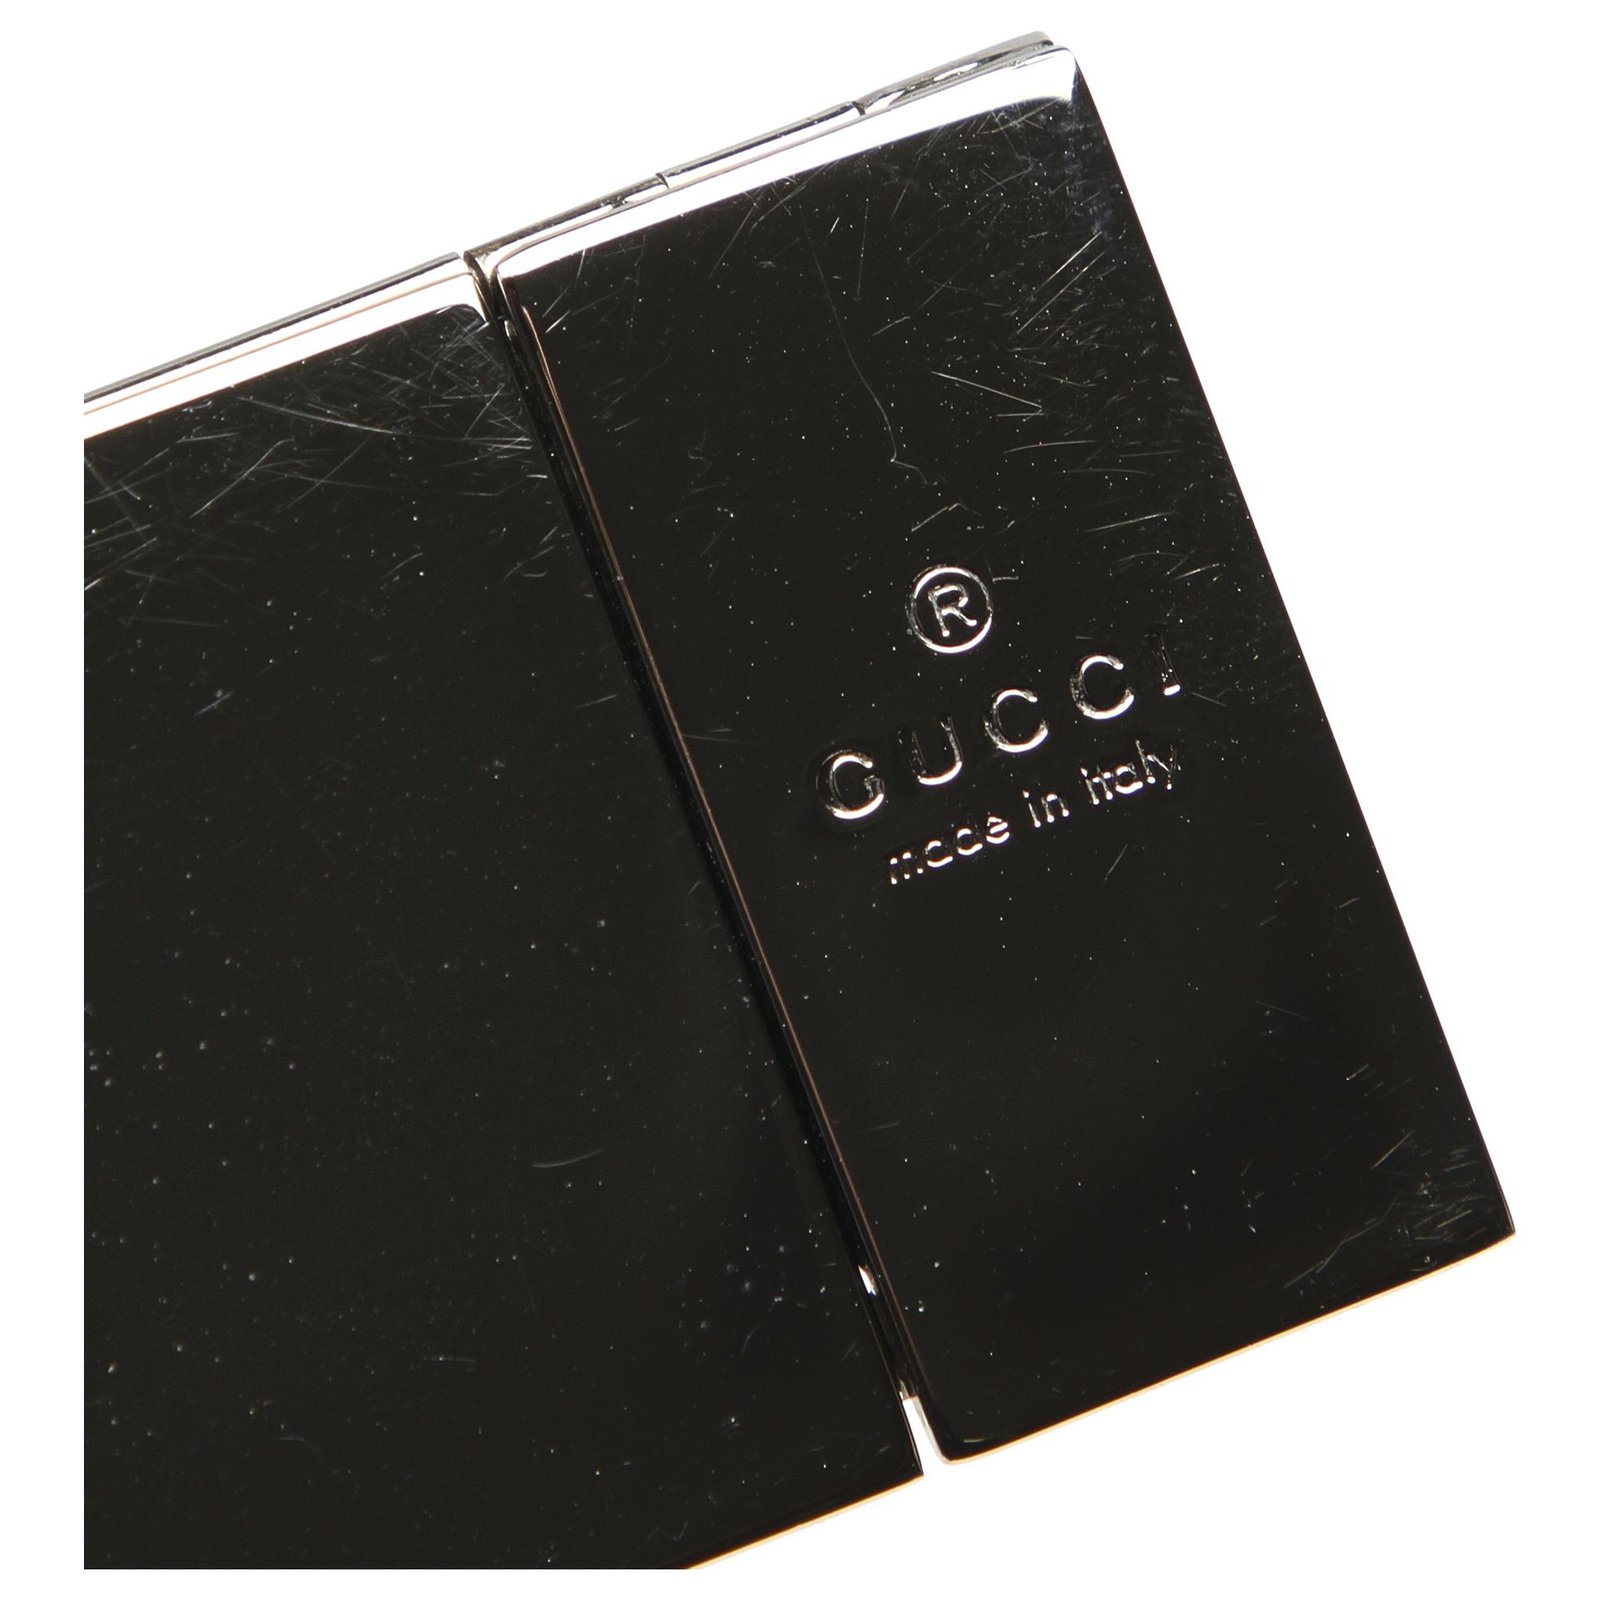 Gucci GG Web Cigarette Case - Black Travel, Accessories - GUC110001